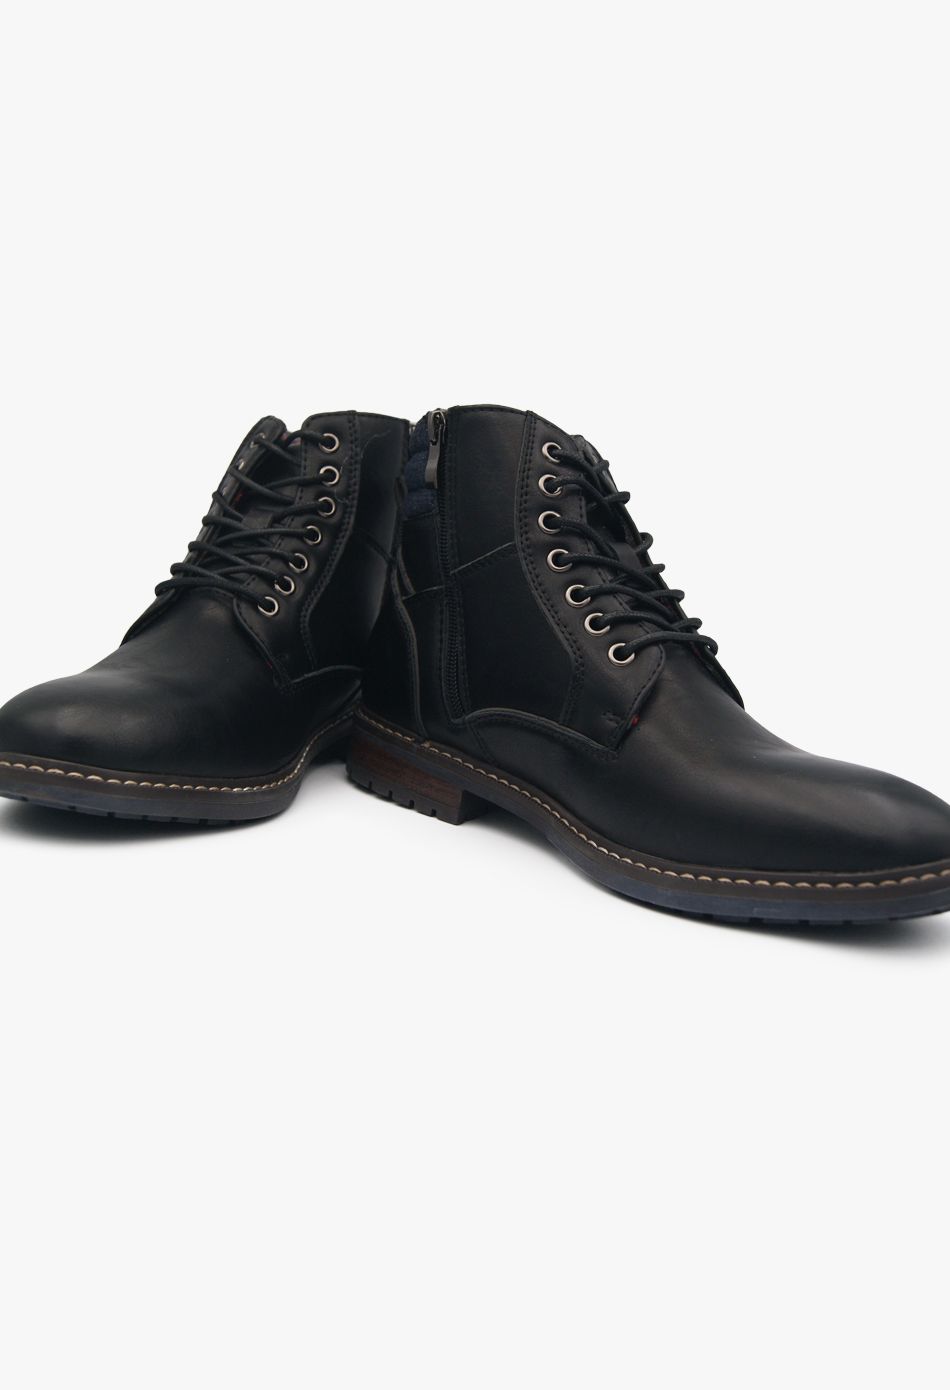 Ανδρικά Αρβυλάκια Μαύρο / 5025-black Ανδρικά Μπότες & Μποτάκια joya.gr